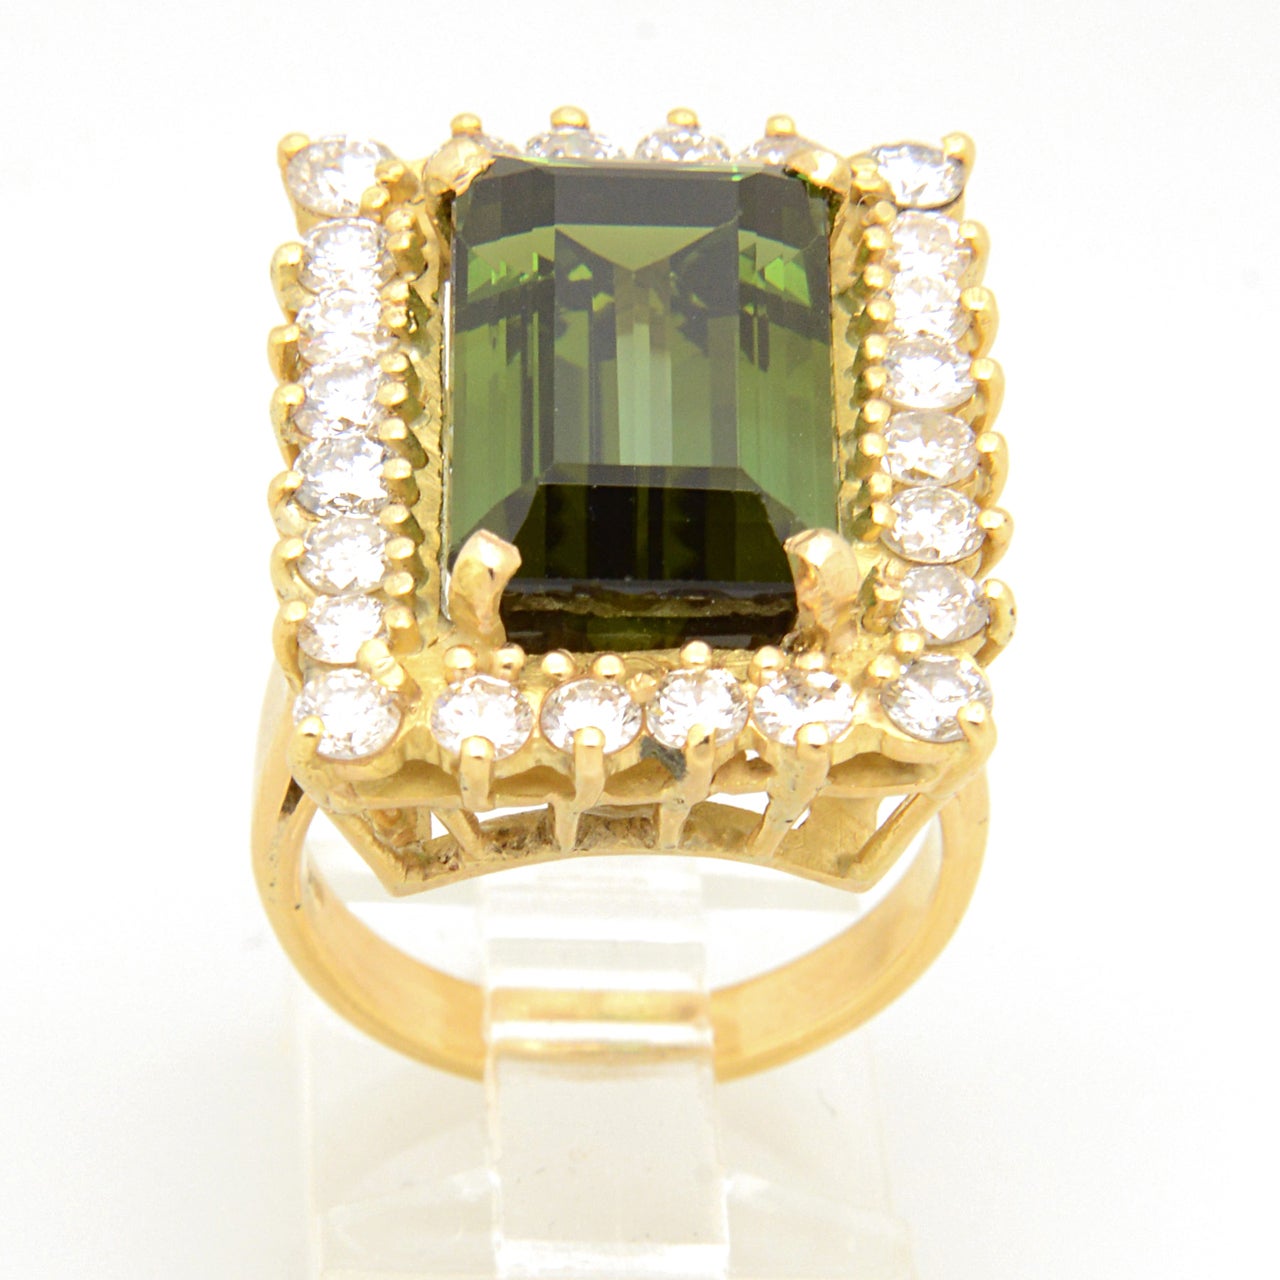 Wahrhaft eleganter Ring mit einem grünen Turmalin im Smaragdschliff, der in einer Diamantfassung gefasst ist.  Die Fassung enthält etwa 1,95 Karat Diamanten.
Es ist eine US-Ringgröße von 6,5, die angepasst werden kann.